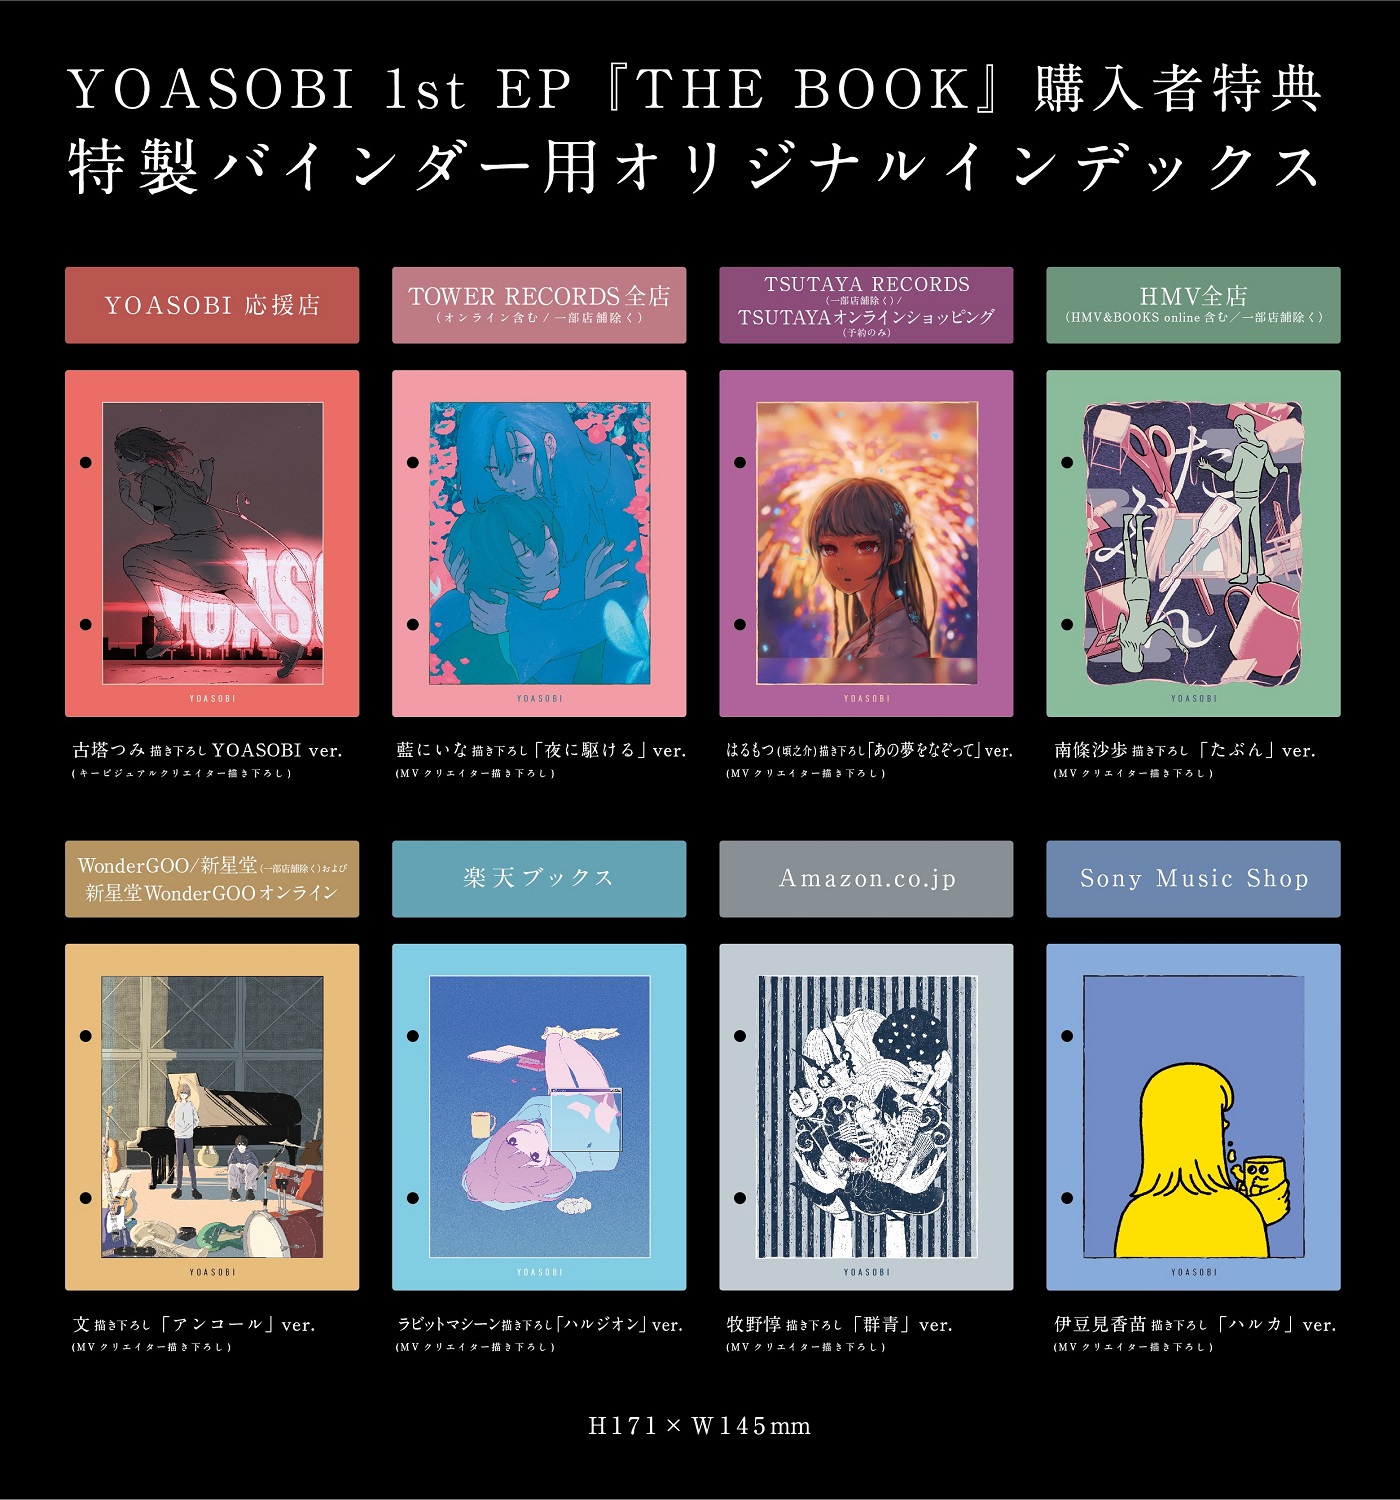 YOASOBI、初のCDとなる1st EP『THE BOOK』商品画像＆収録楽曲公開 